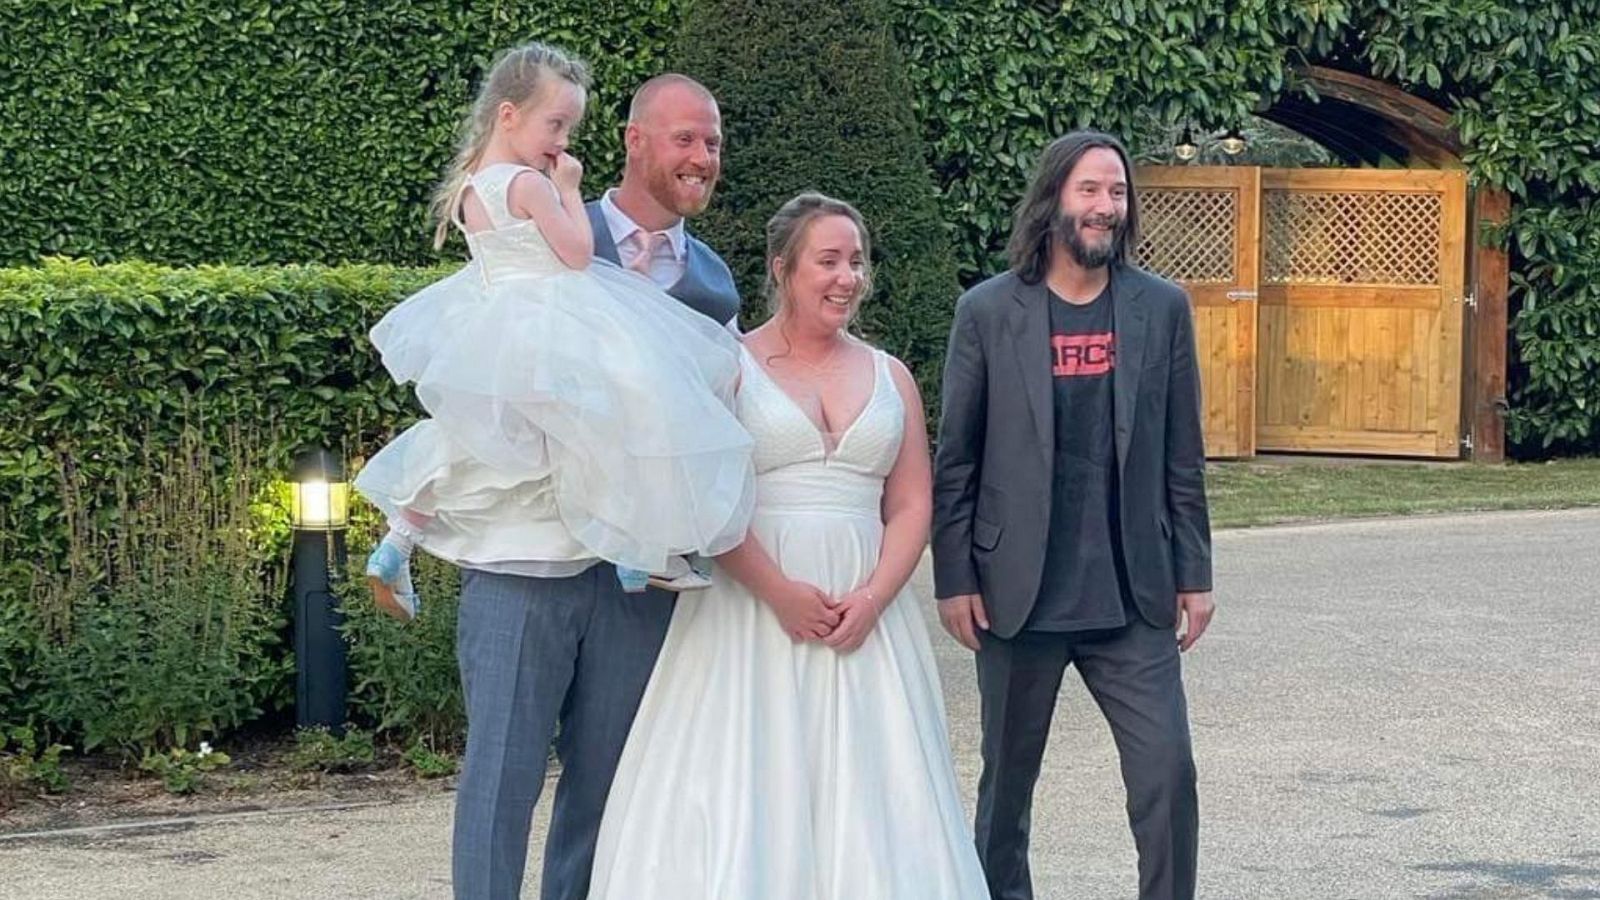 Motivos por los que amamos a Keanu Reeves: 'se cuela' en una boda por sorpresa